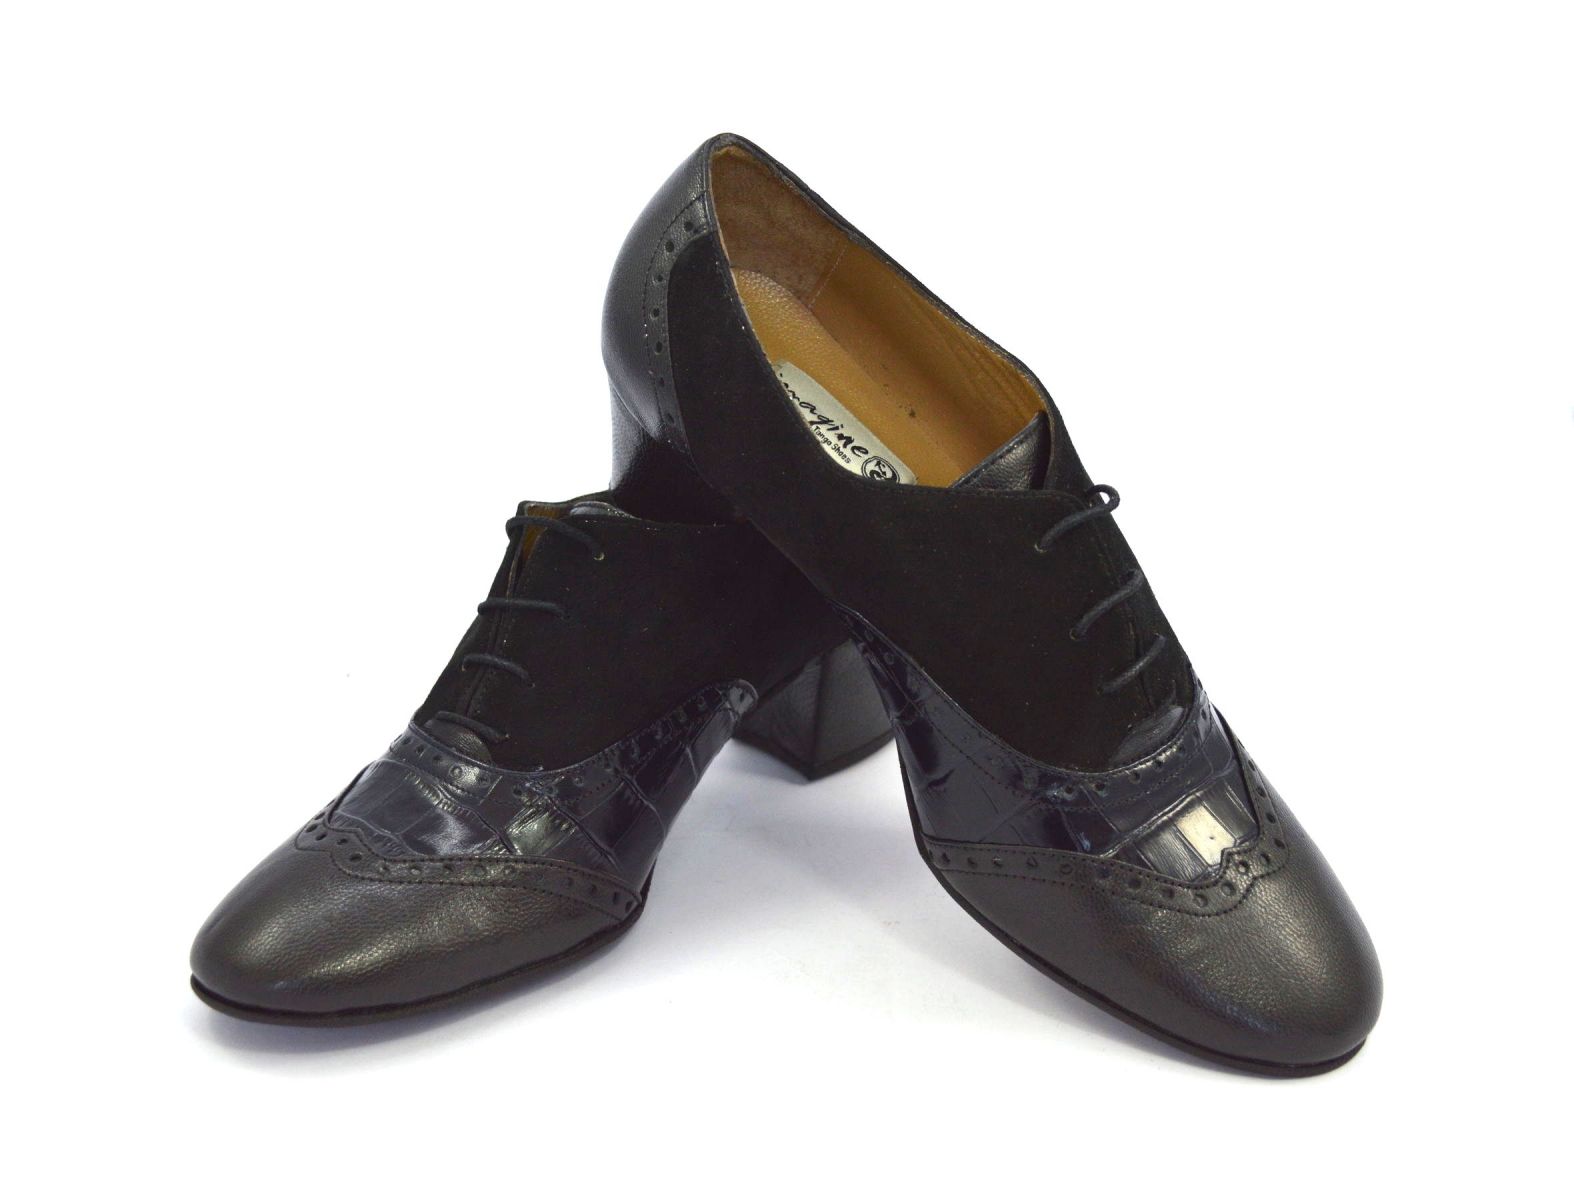 Γυναικείο παπούτσι χορού κλειστού τύπου με κορδόνια από συνδυασμό ματ, κροκό και σουέντ μαύρο δέρμα